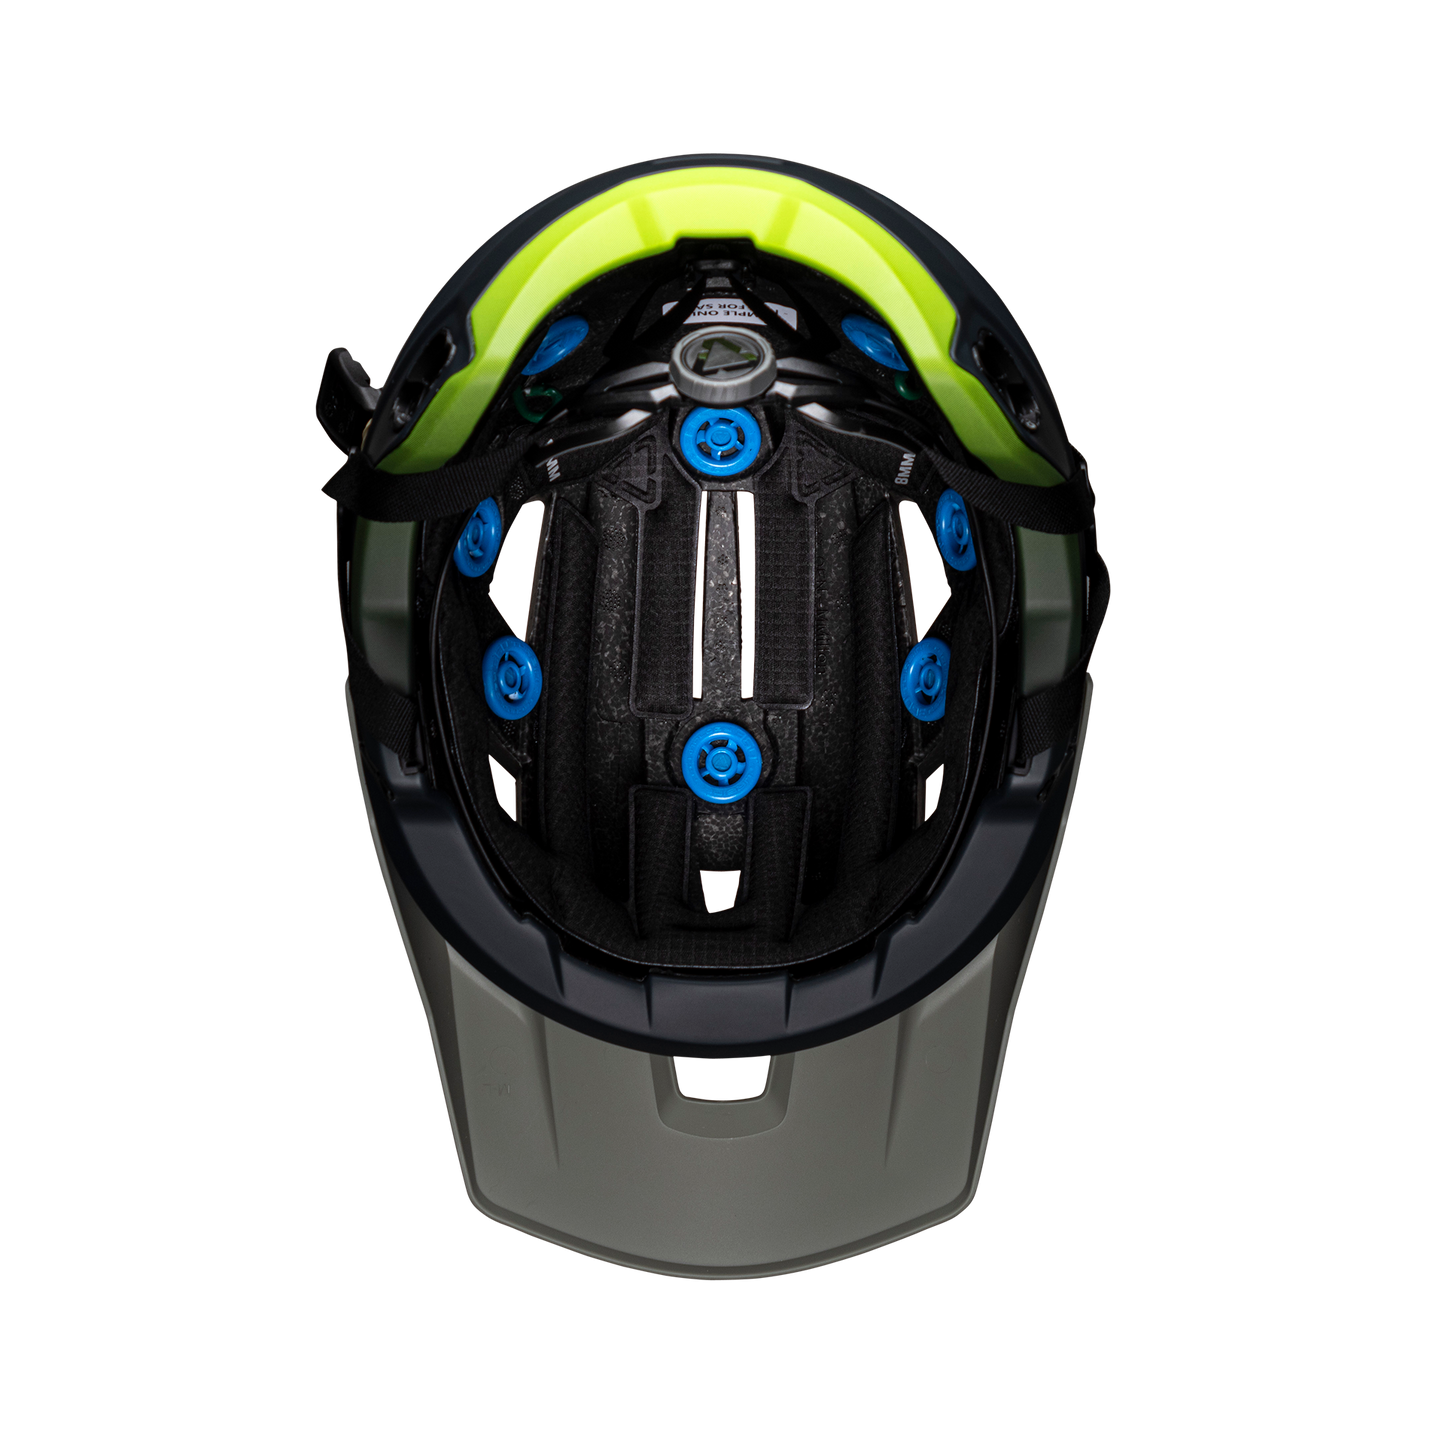 Helmet MTB Enduro 3.0  - Granite